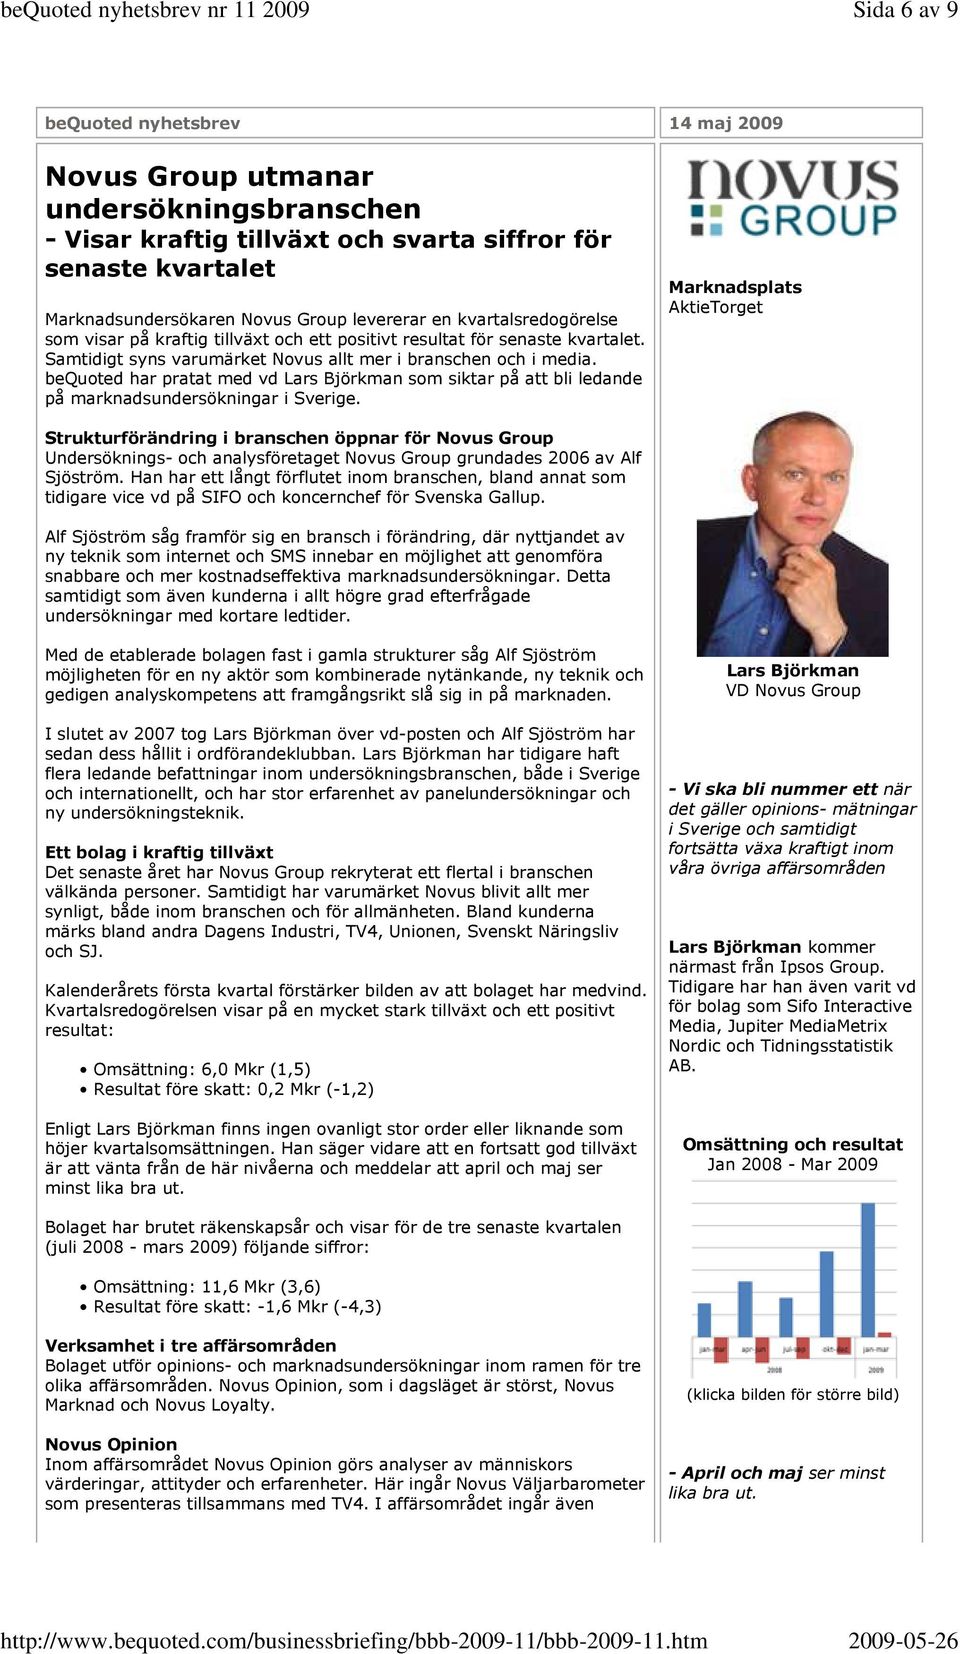 bequoted har pratat med vd Lars Björkman som siktar på att bli ledande på marknadsundersökningar i Sverige.